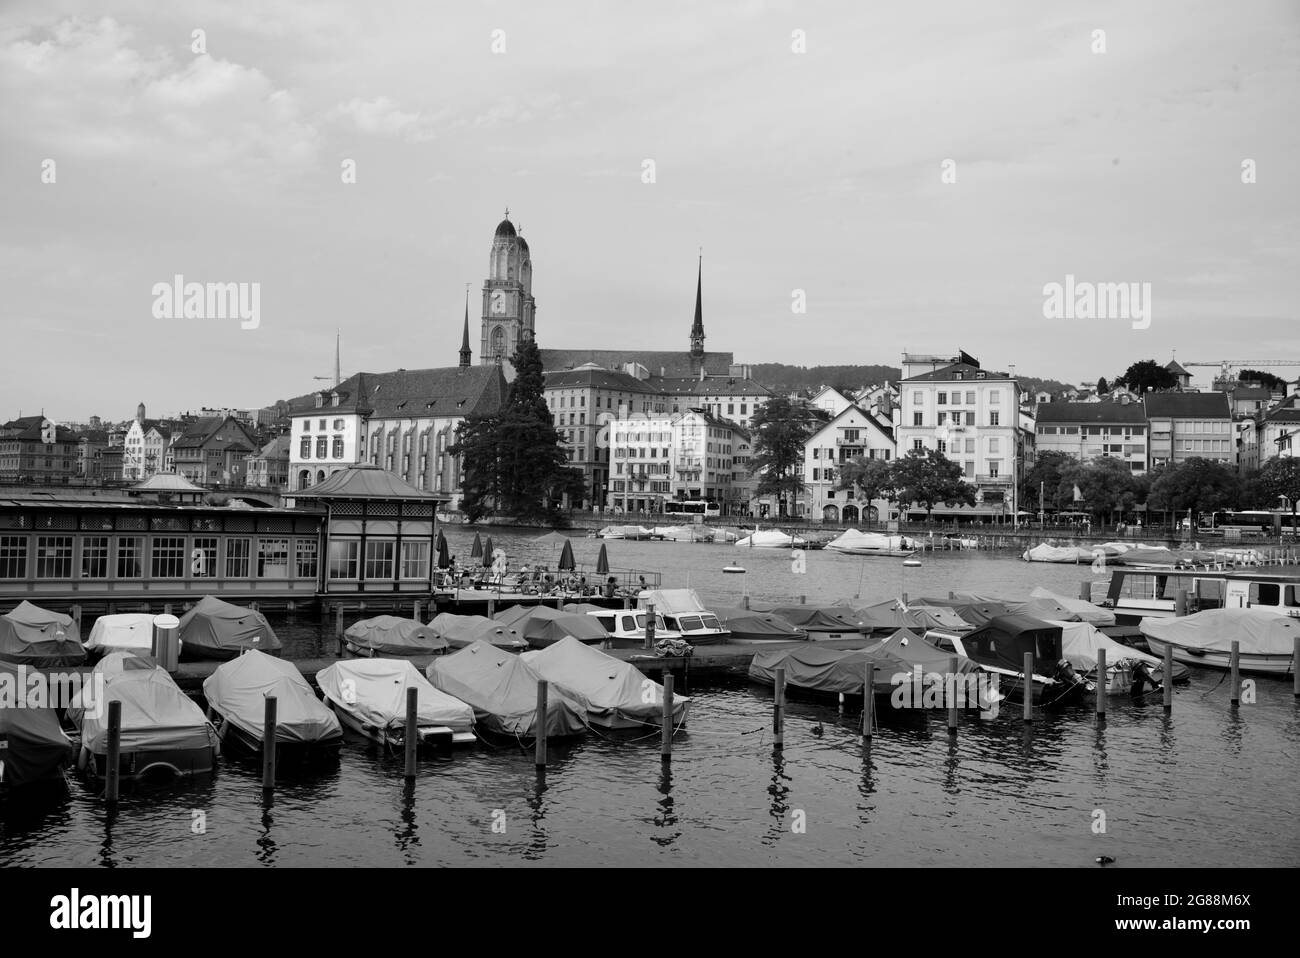 Ville emblématique de Zurich, Grossmunster vu en arrière-plan, Suisse Banque D'Images